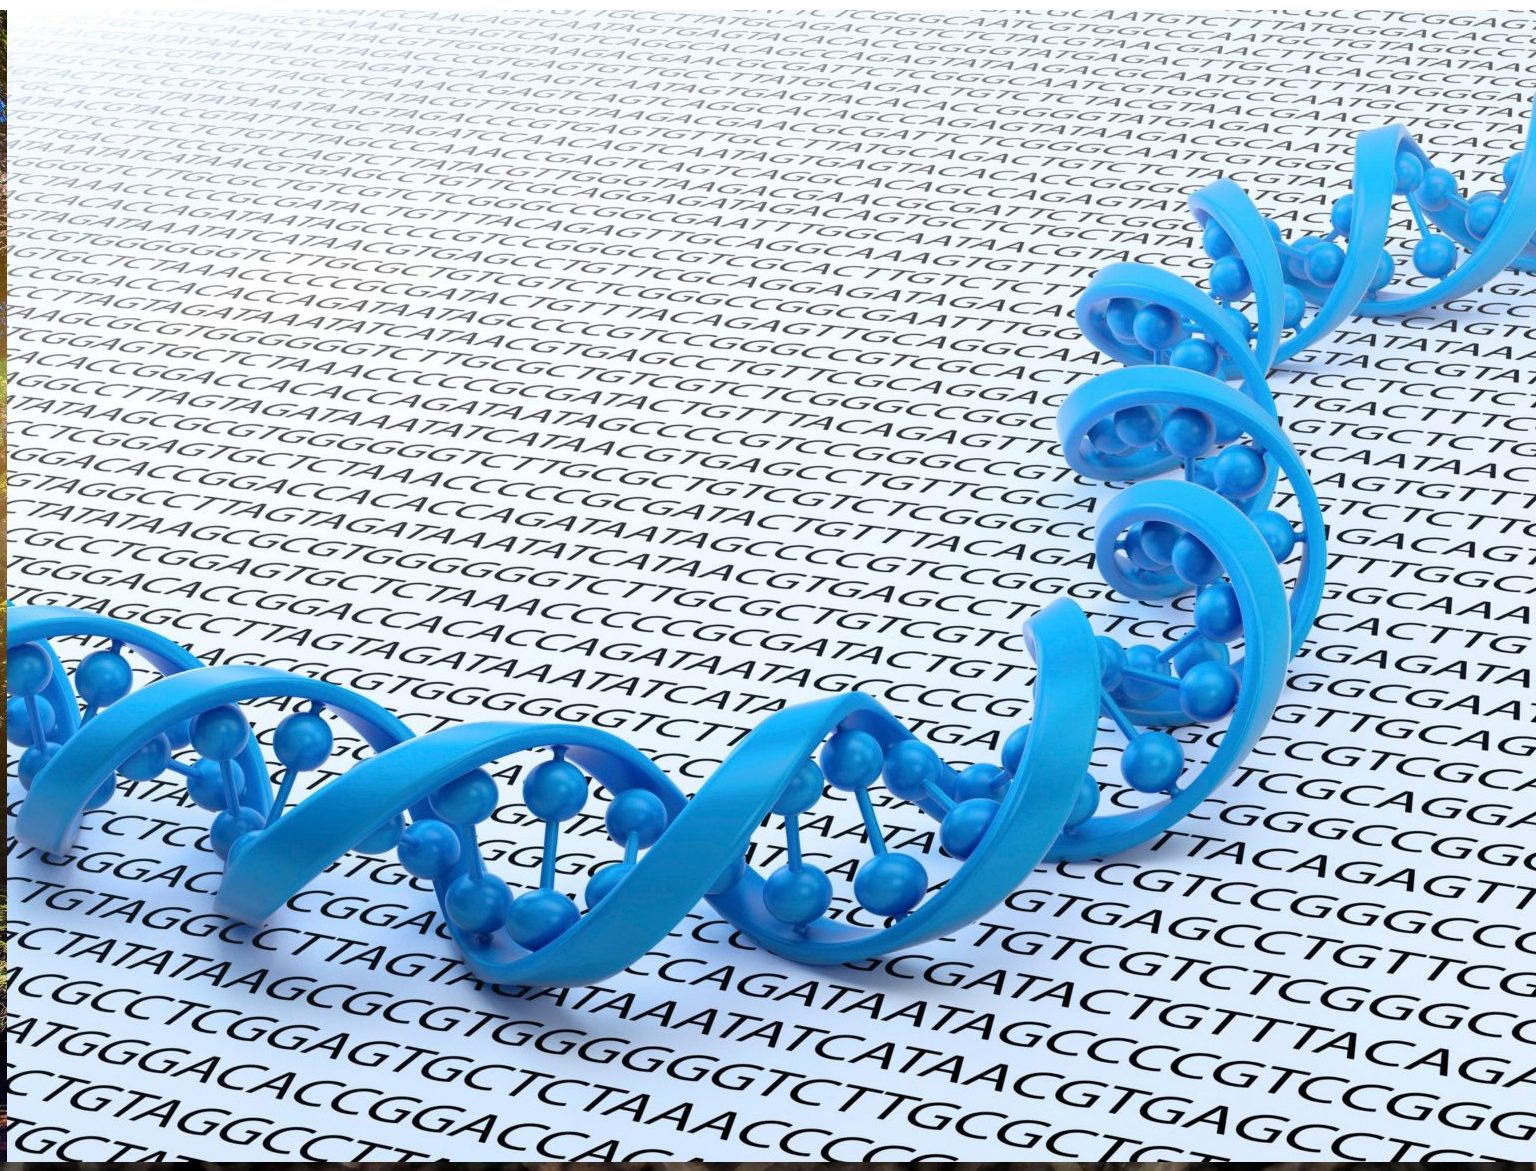 La revolución del genoma, ¿en qué consiste?